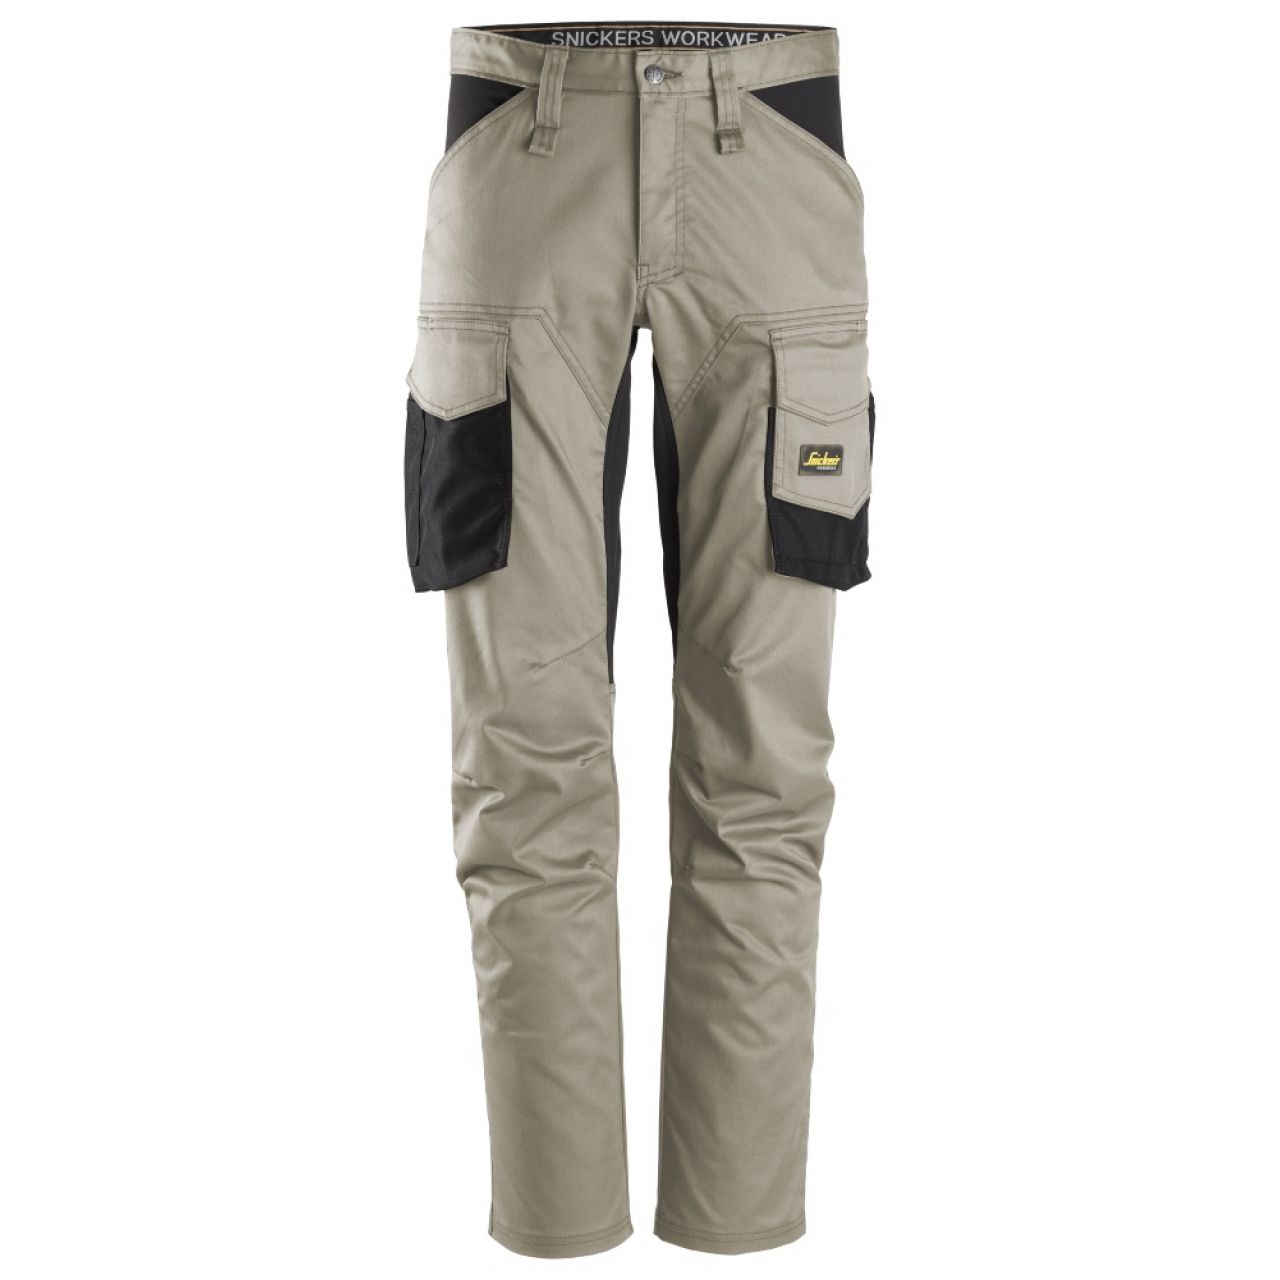 6803 Pantalones largos de trabajo elásticos sin bolsillos para las rodilleras AllroundWork beige-negro talla 200